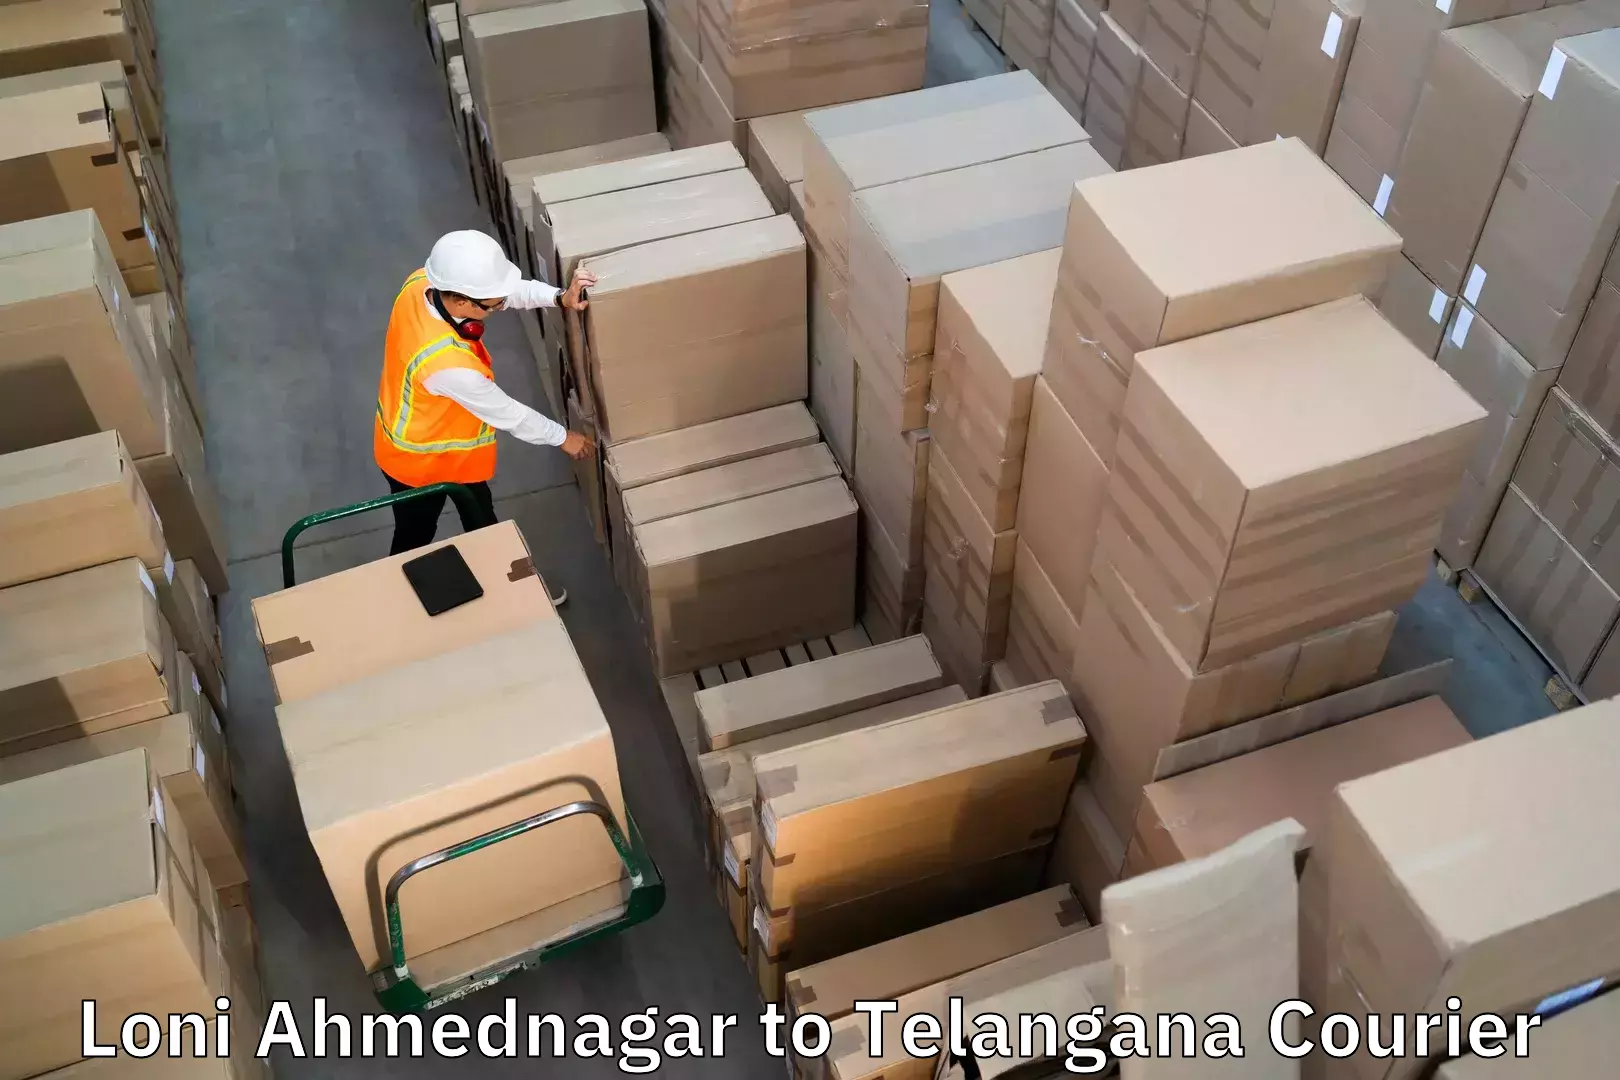 Luggage transfer service Loni Ahmednagar to Yellareddy